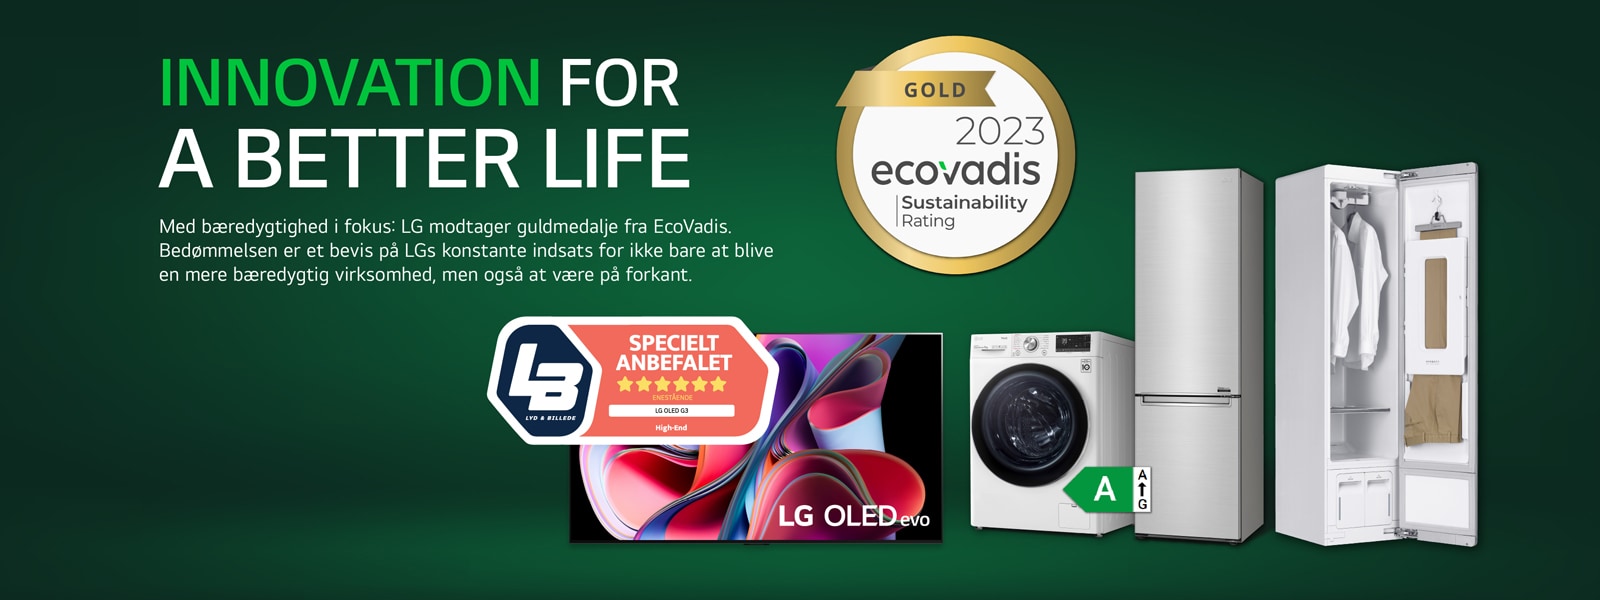 LG har nået det højest mulige niveau i bærekraftsrangeringen fra EcoVadis